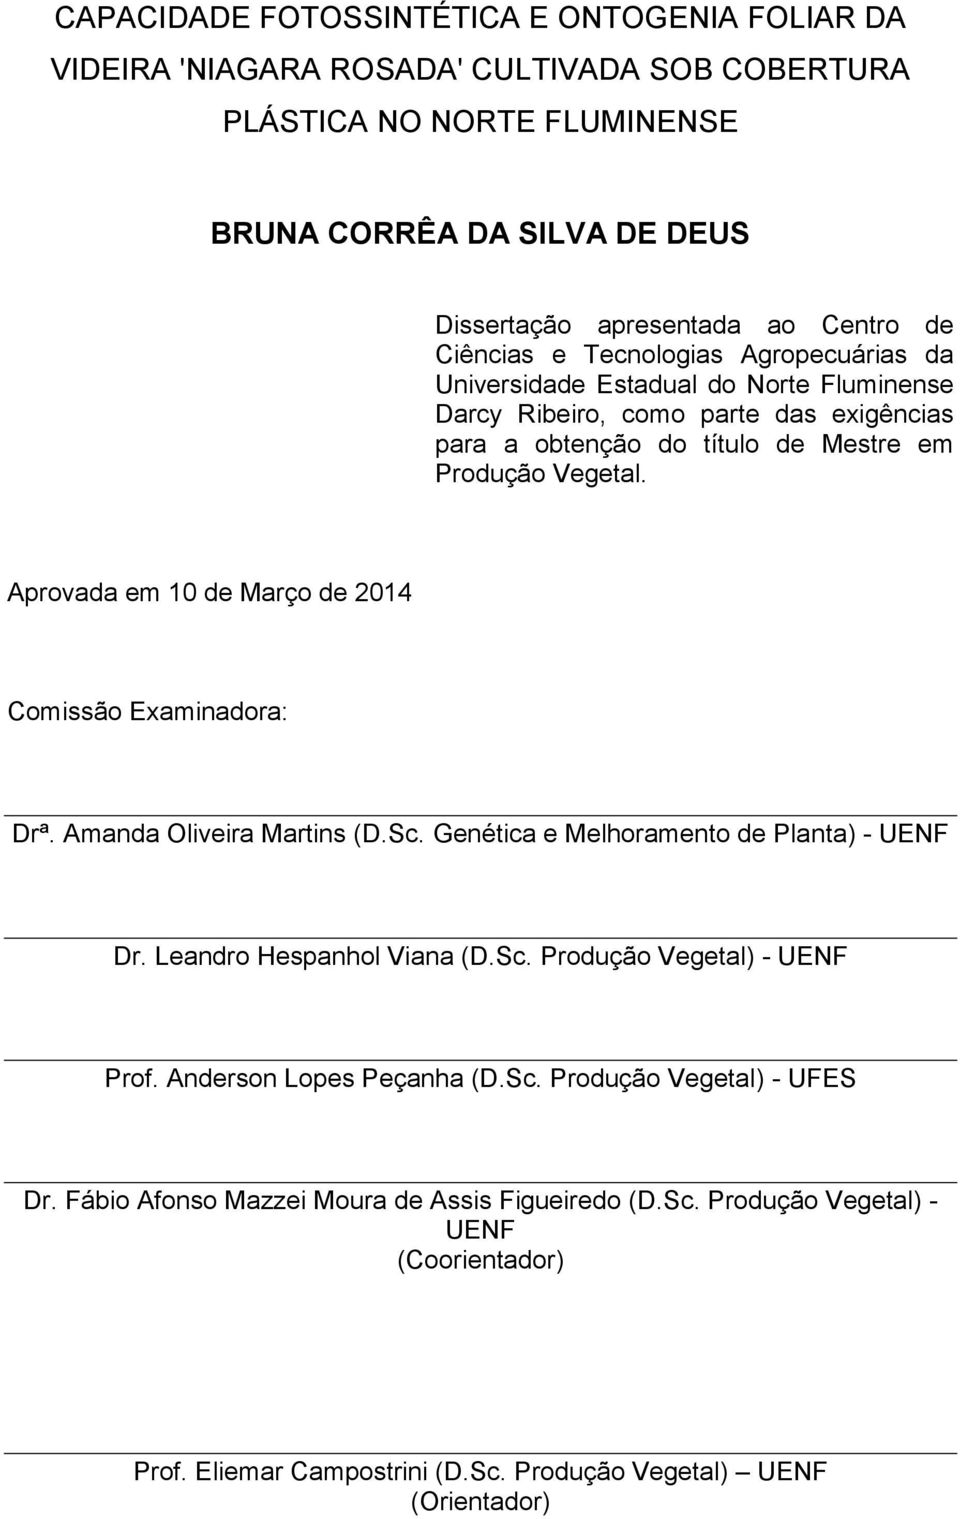 Aprovada em 10 de Março de 2014 Comissão Examinadora: Drª. Amanda Oliveira Marti (D.Sc. Genética e Melhoramento de Planta) - UENF Dr. Leandro Hespanhol Viana (D.Sc. Produção Vegetal) - UENF Prof.